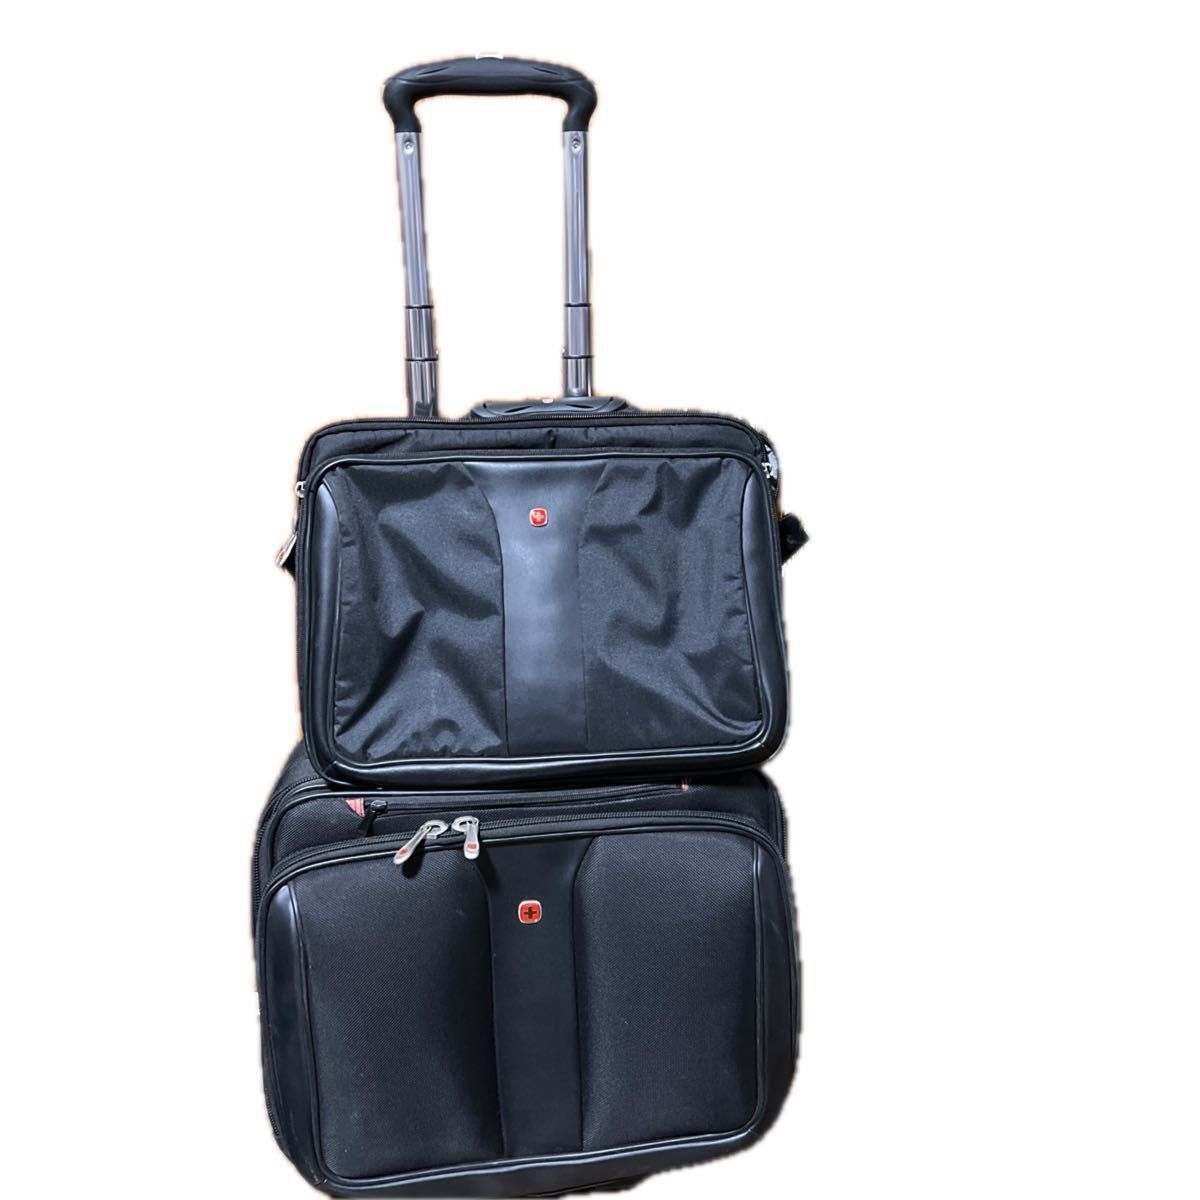 キャリーバッグ ブラック キャリーケース ブリーフケース ビジネスバッグ 機内持ち込み スーツケース キャリーバック